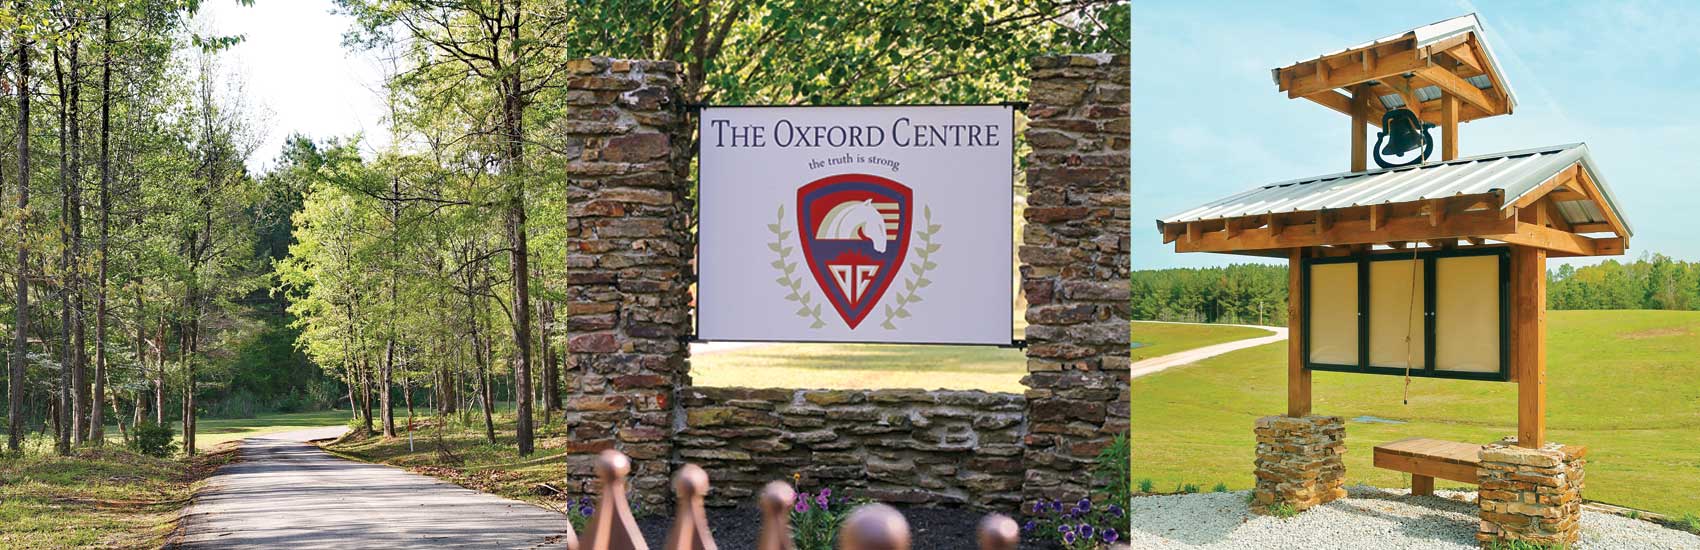 The Oxford Centre